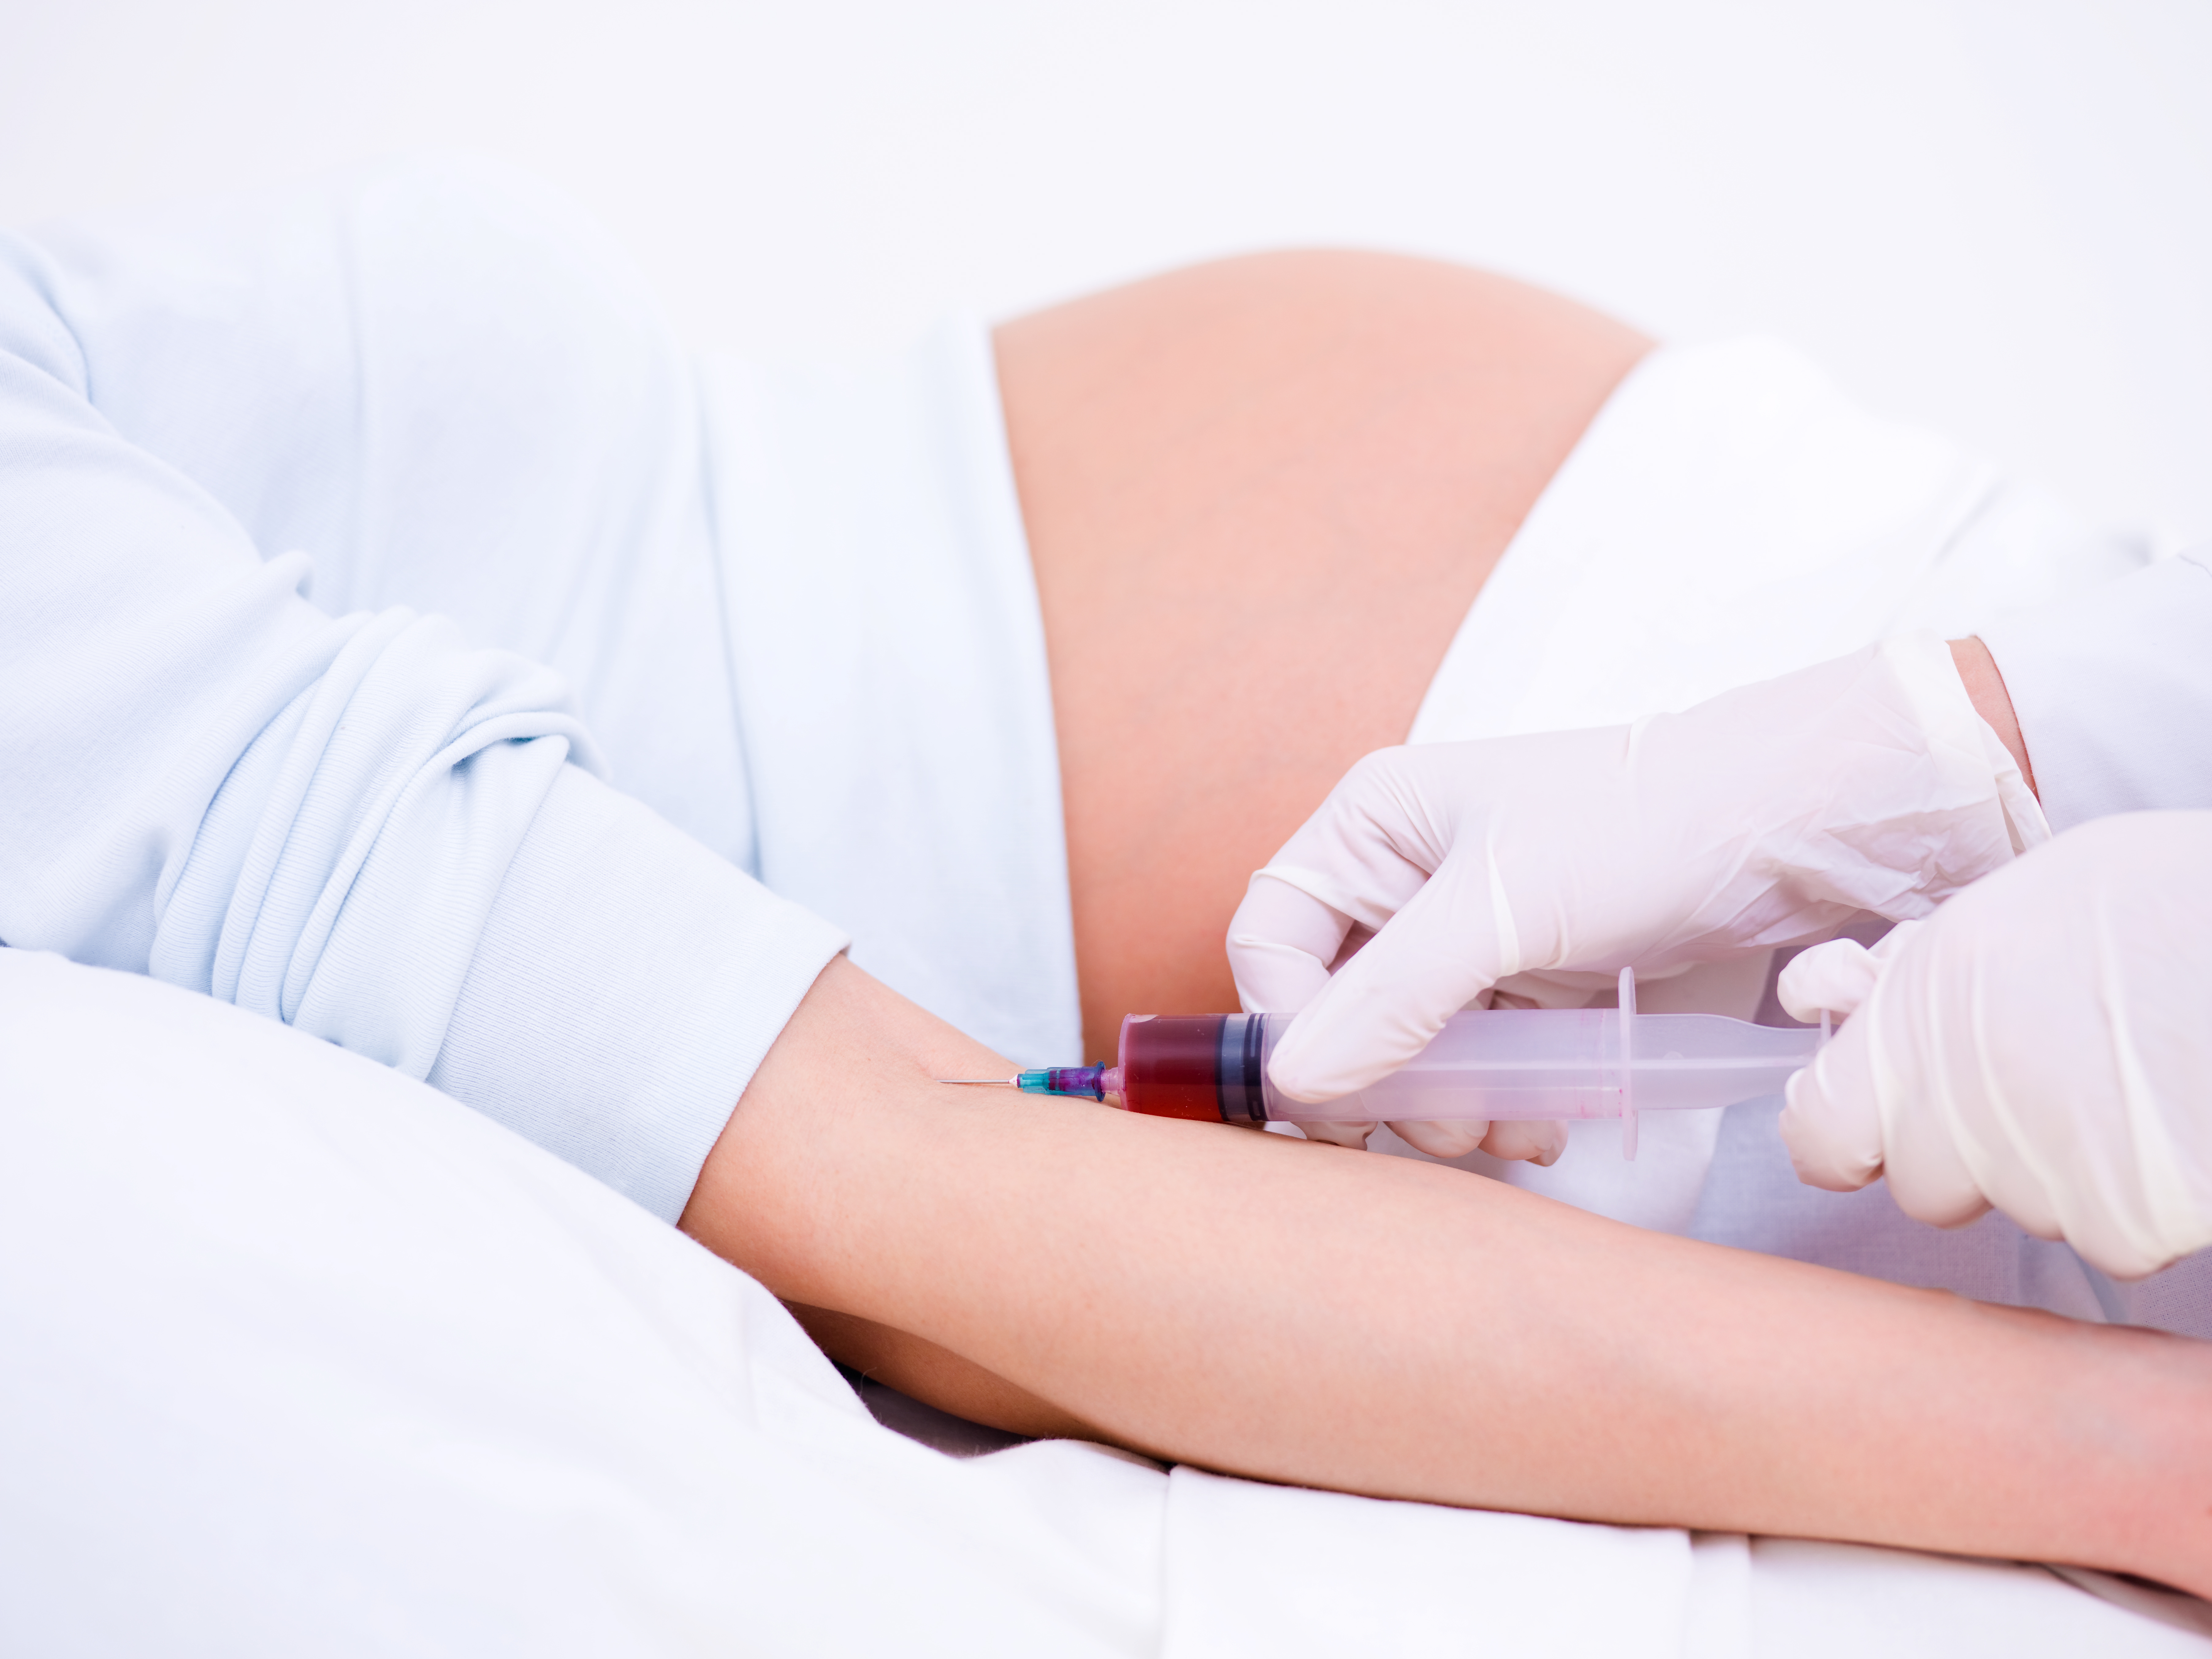 Un peu de sang de la mère suffit, avec ce nouveau test diagnostique, pour identifier les anomalies génétiques fœtales chez les femmes enceintes.